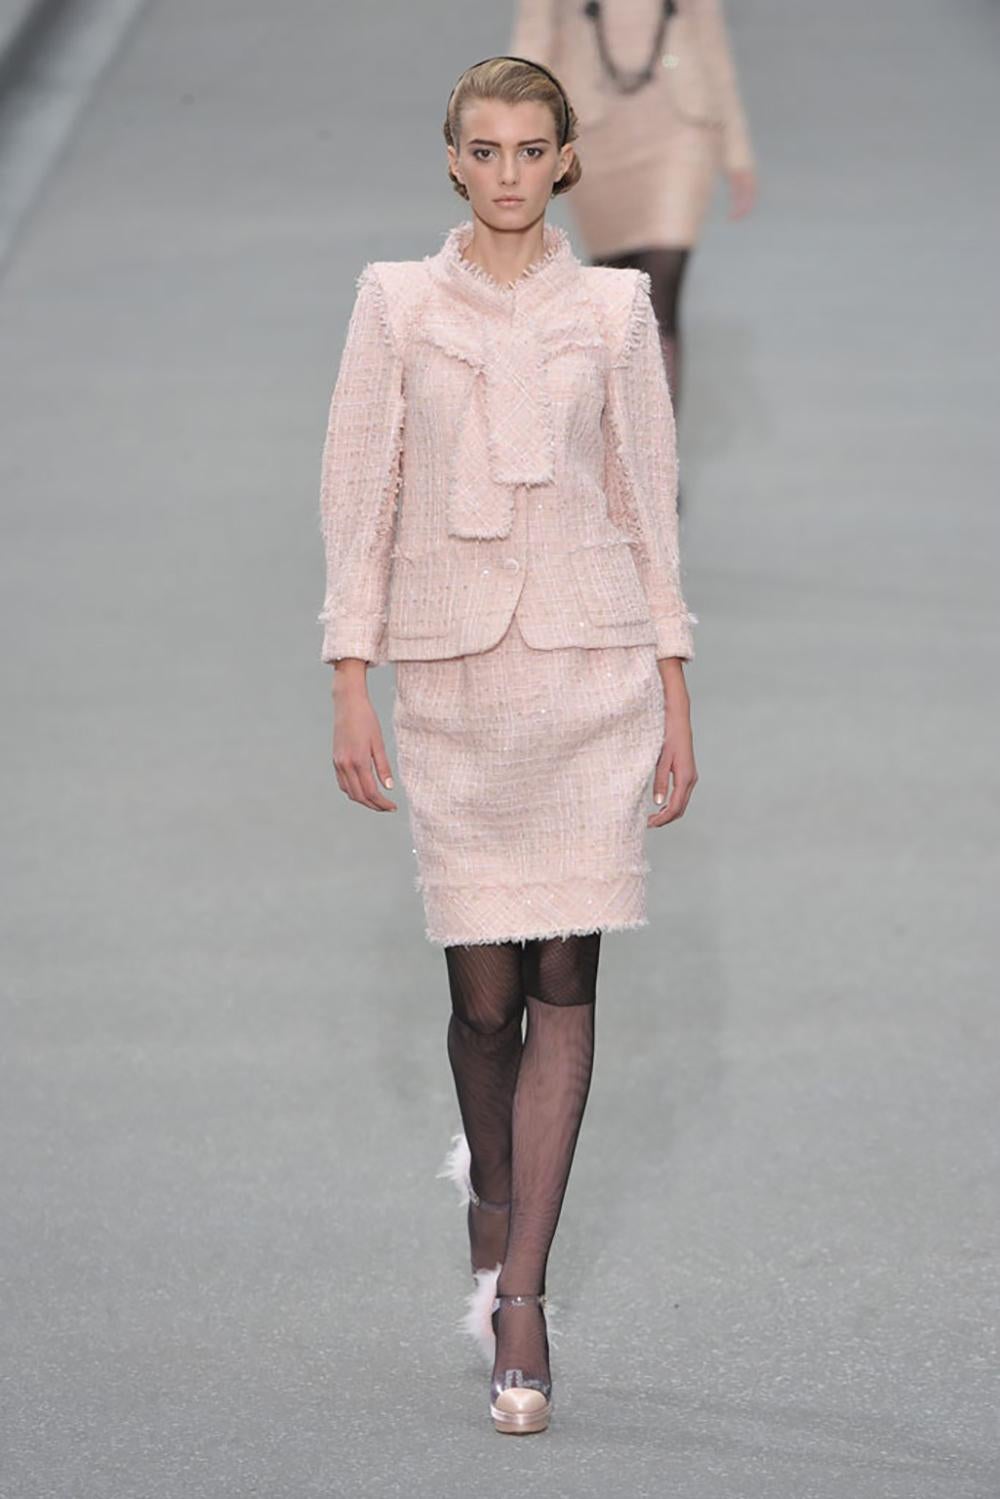 Nouveau fabuleux ensemble veste et jupe en tweed à rubans de Chanel, issu du défilé de la Collection S 2009. Prix de vente de la veste 8,860$, jupe 3,670$.
Aujourd'hui, le prix en boutique d'une veste en tweed avec ruban commence à 16 000 $.
Marque